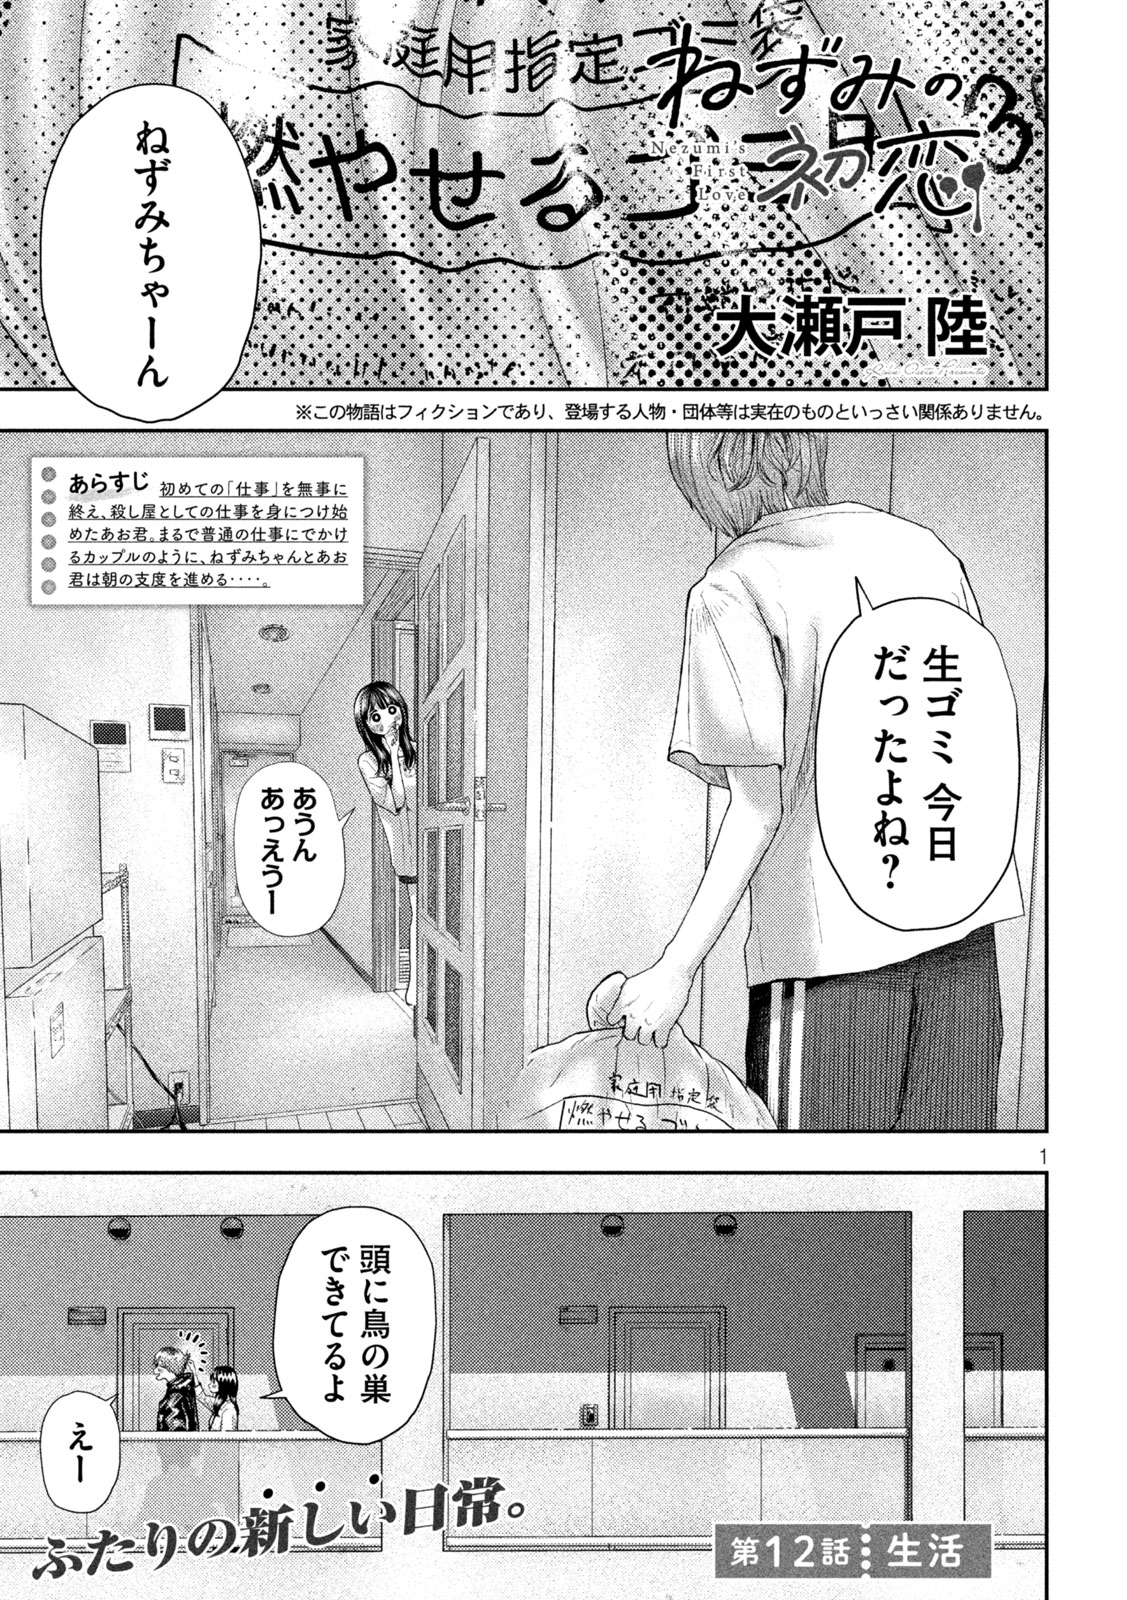 Nezumi no Koi - Chapter 12 - Page 1